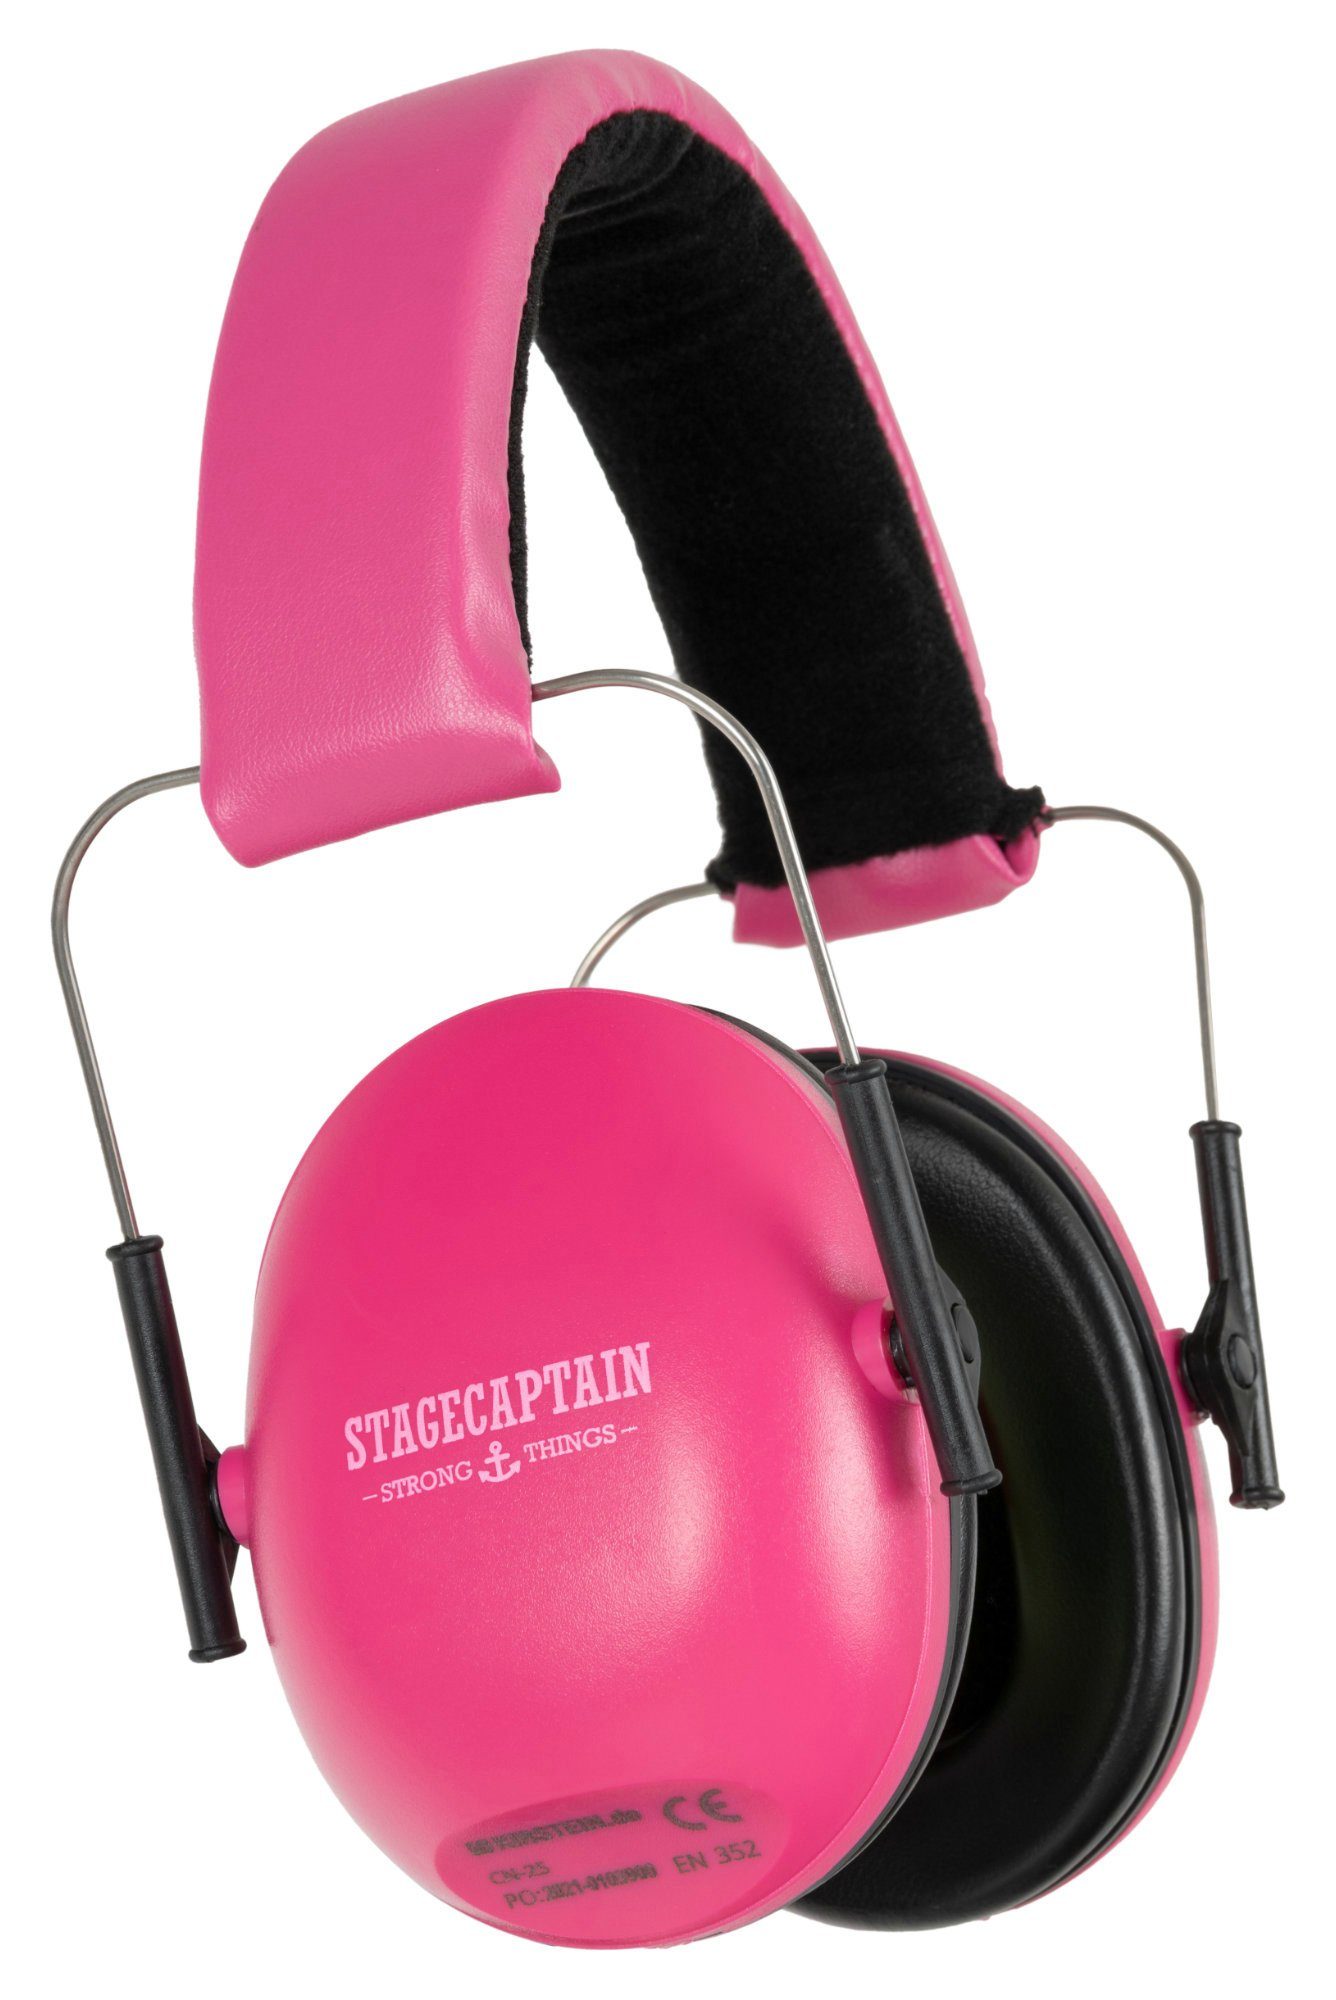 Stagecaptain Bügelgehörschutz Contranoise CN-25 Gehörschutz mit 25 dB Dämpfung, Ohrenschützer für Kinder und Erwachsene Pink | Gehörschutz